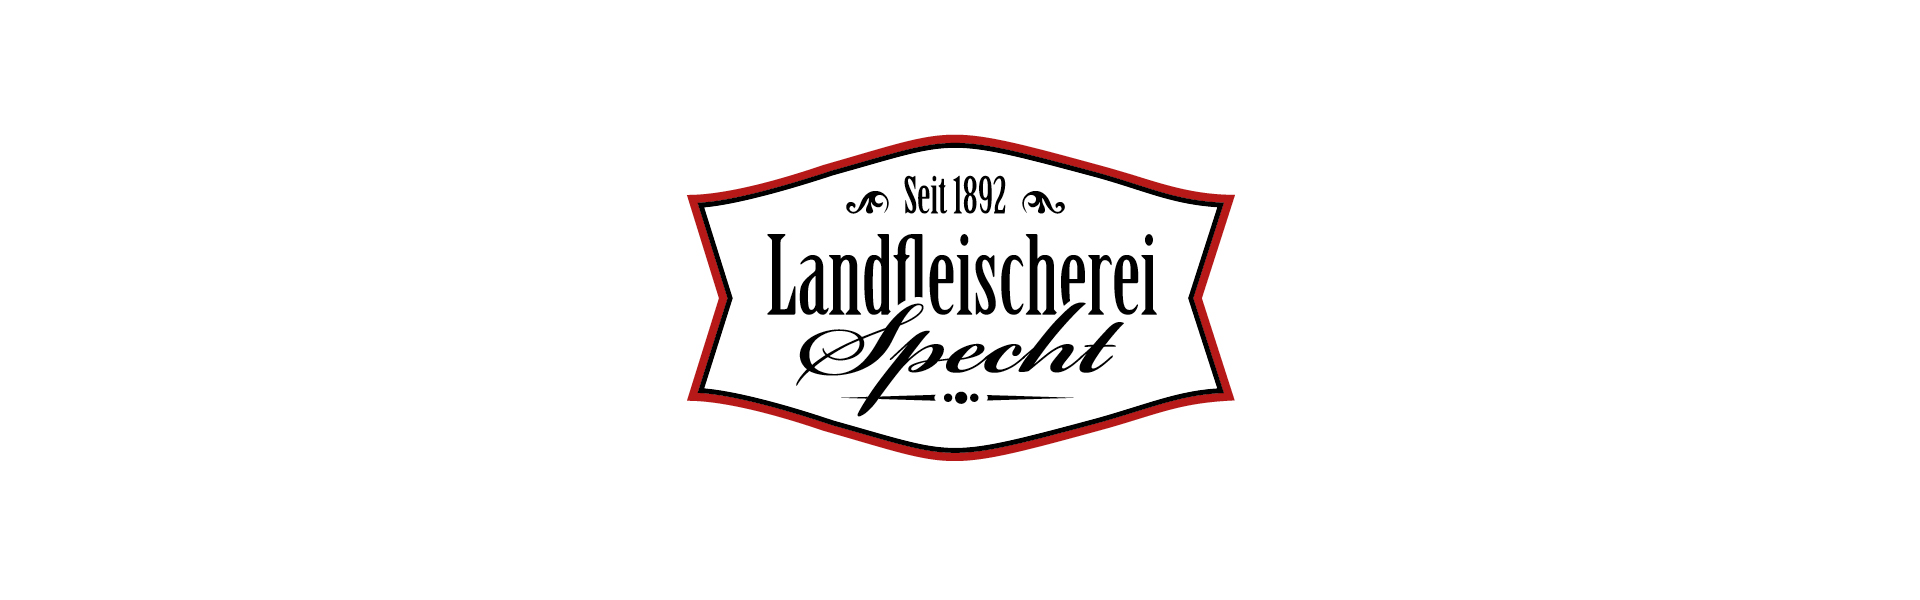 Logo Branding Design Landfleischerei Specht